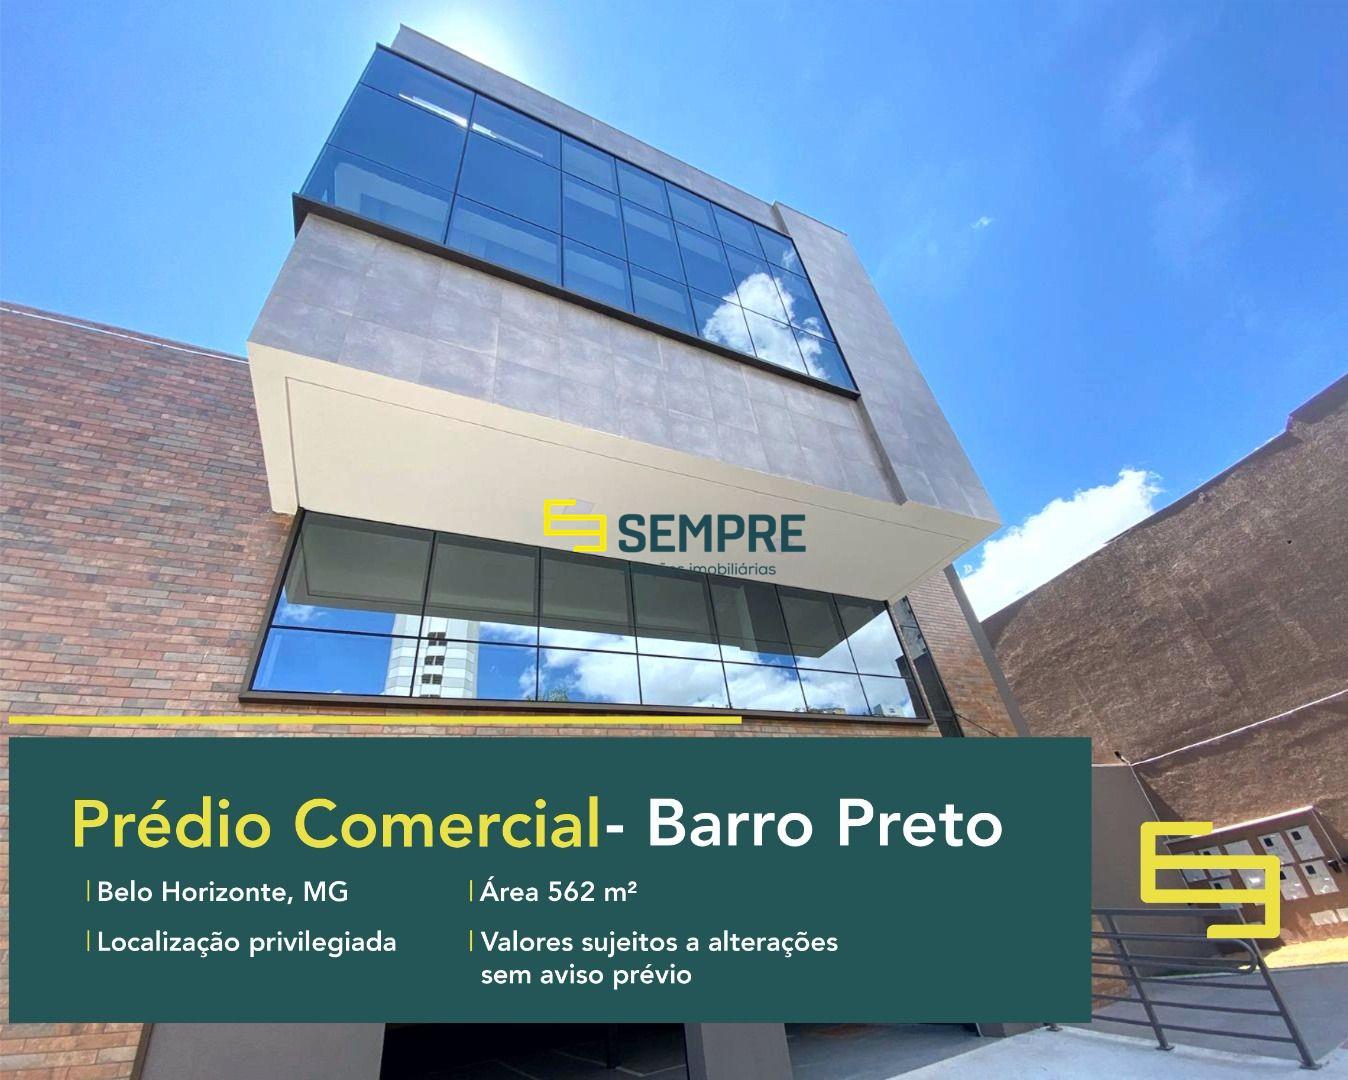 Prédio comercial para locação com 5 vagas no Barro Preto em Belo Horizonte. Prédio comercial com salas comerciais para alugar.